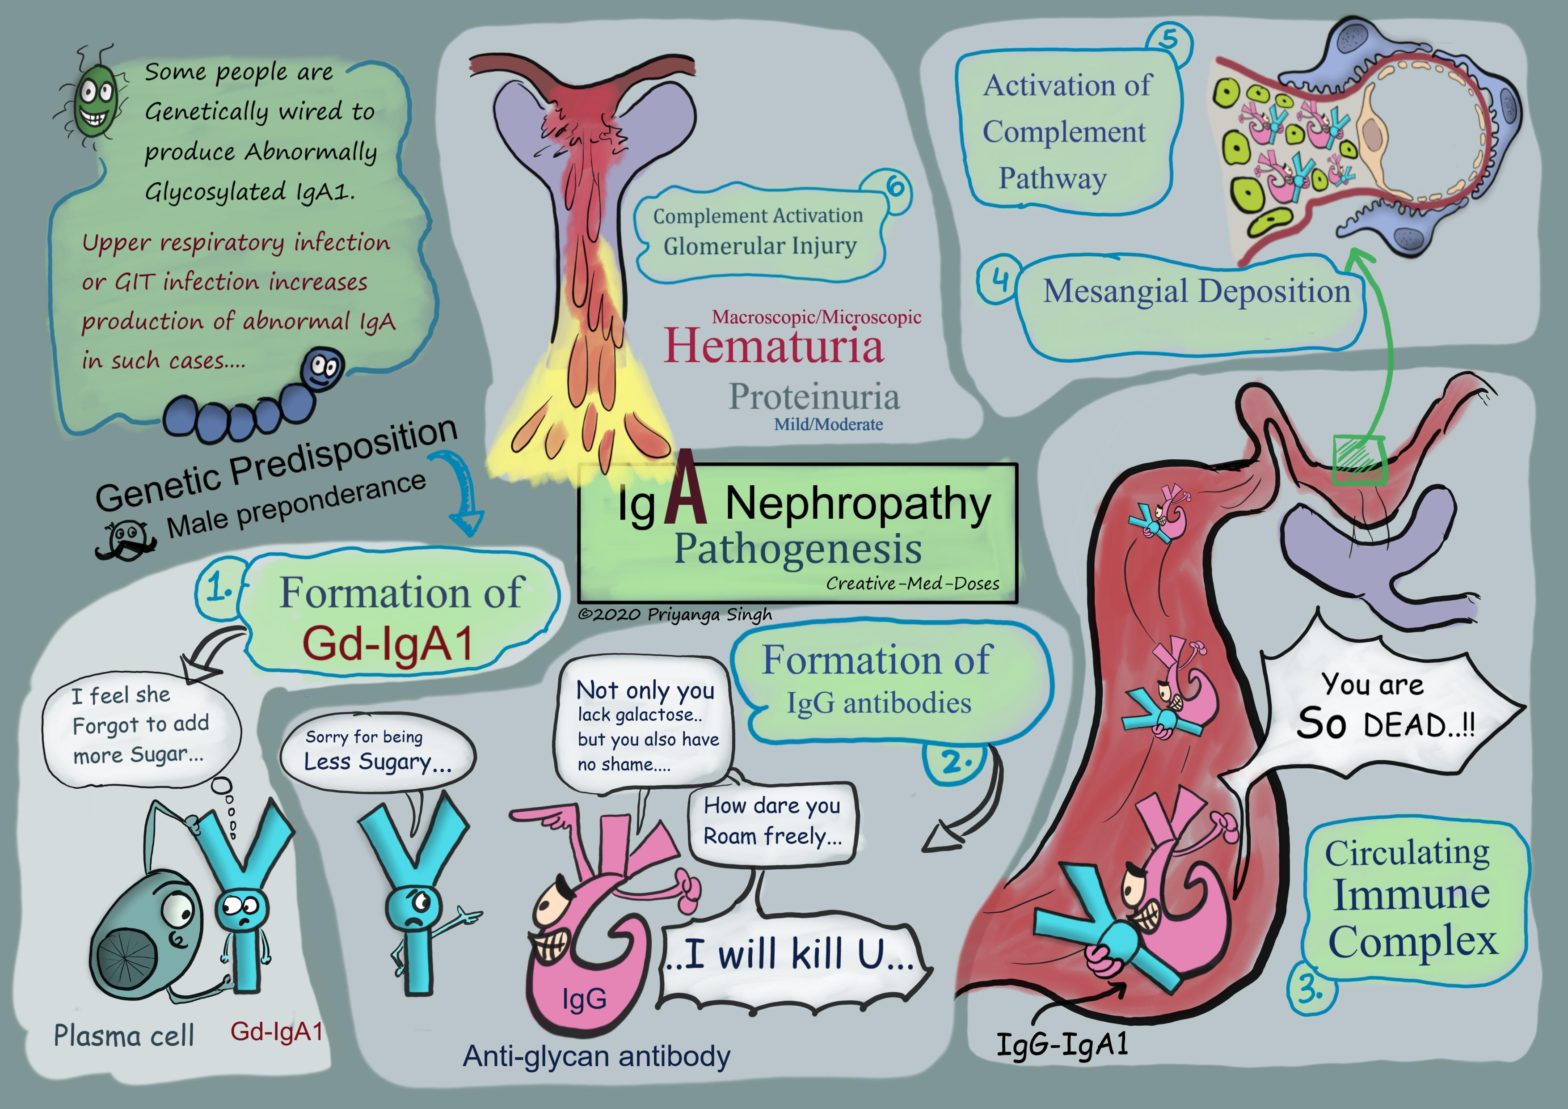 IgA nephropathy pathogenesis